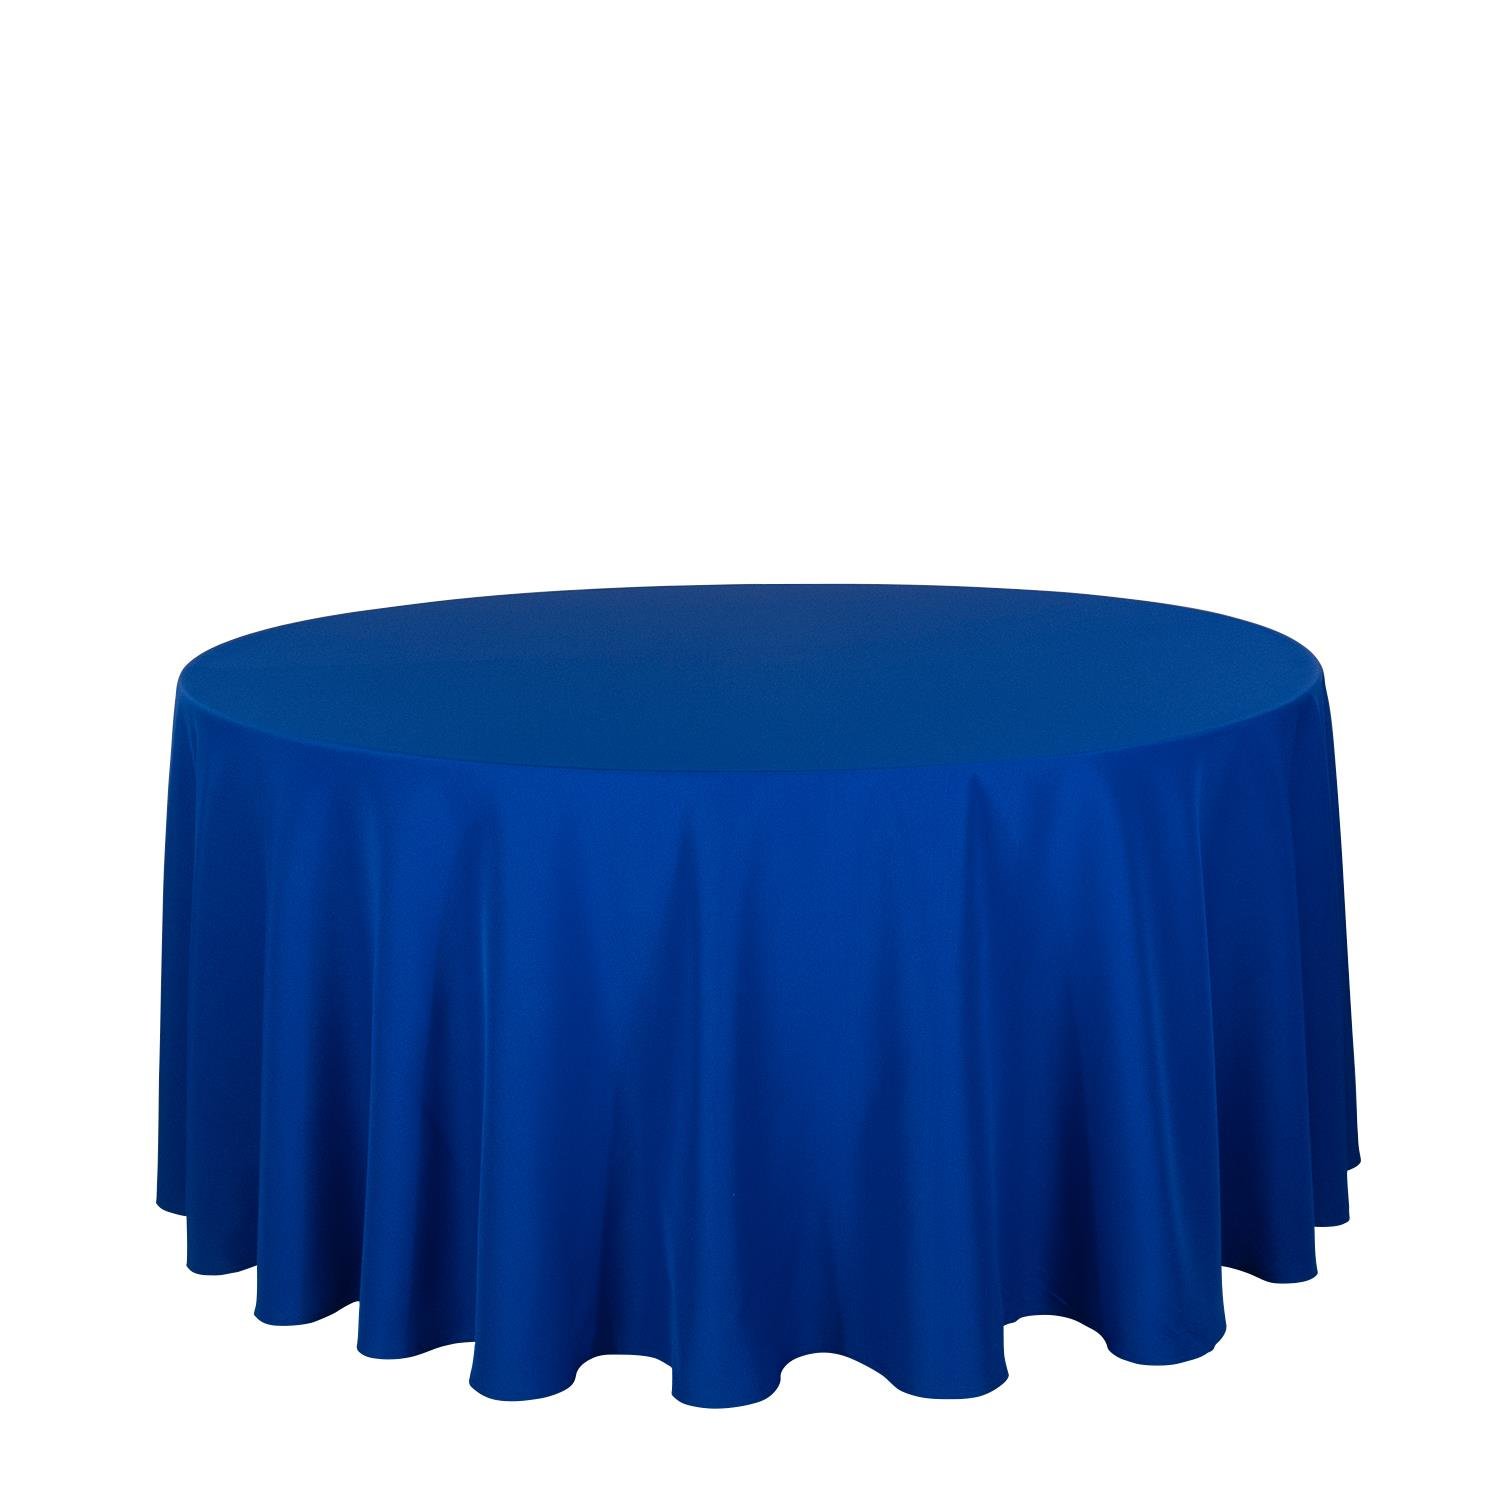 Runde Tischdecke Royal Blau mieten -Eventdeko-For-Rent, 15,98 €